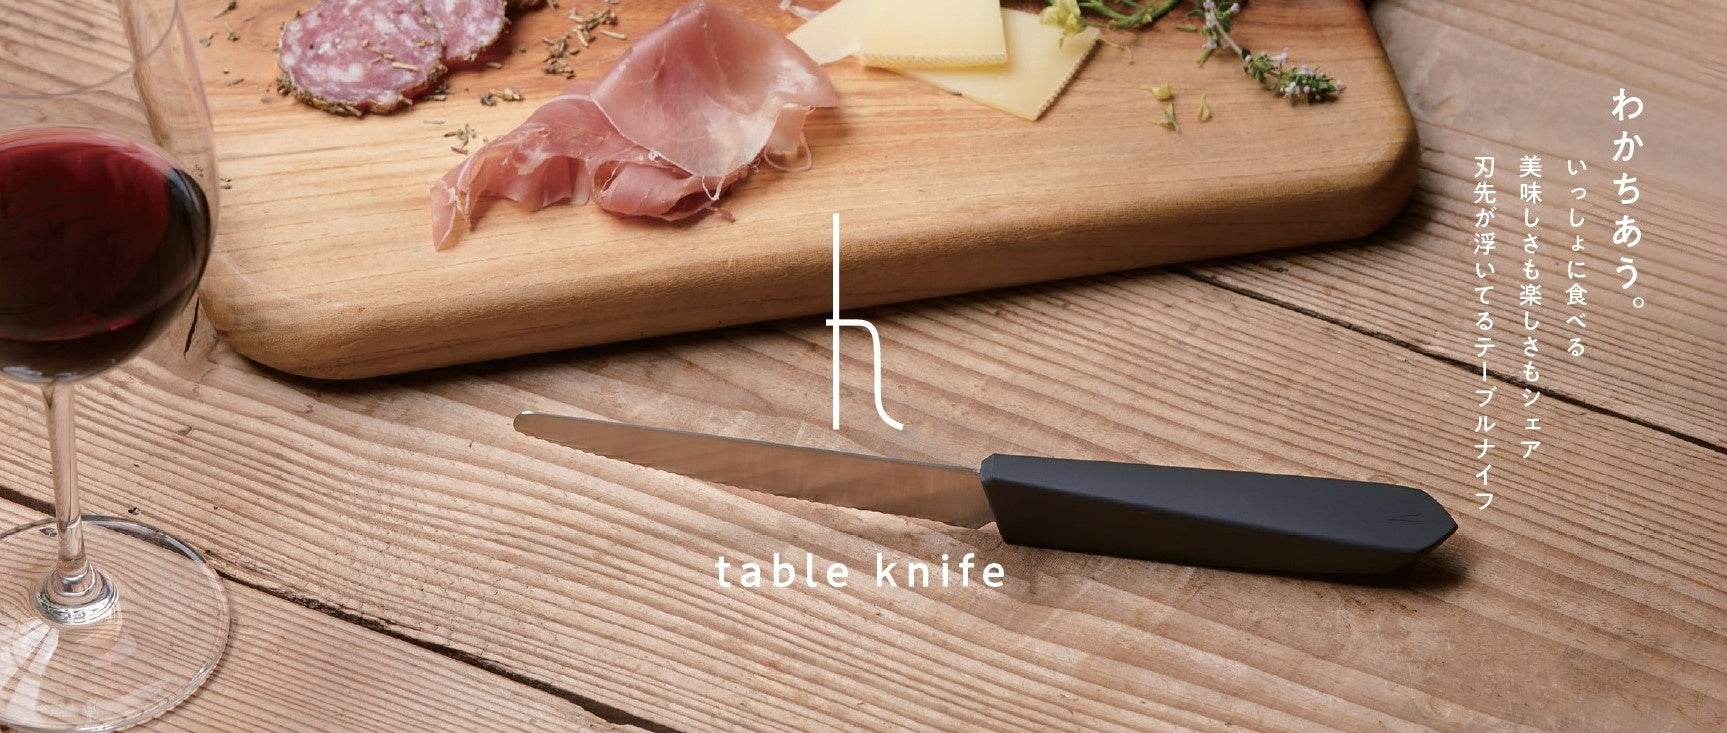 一緒に食べる喜びも美味しさもシェア。刃先が浮いて自立する「table knife」、暮らしの新しいスタンダードを提案する h tag より9月14日発売のサブ画像1